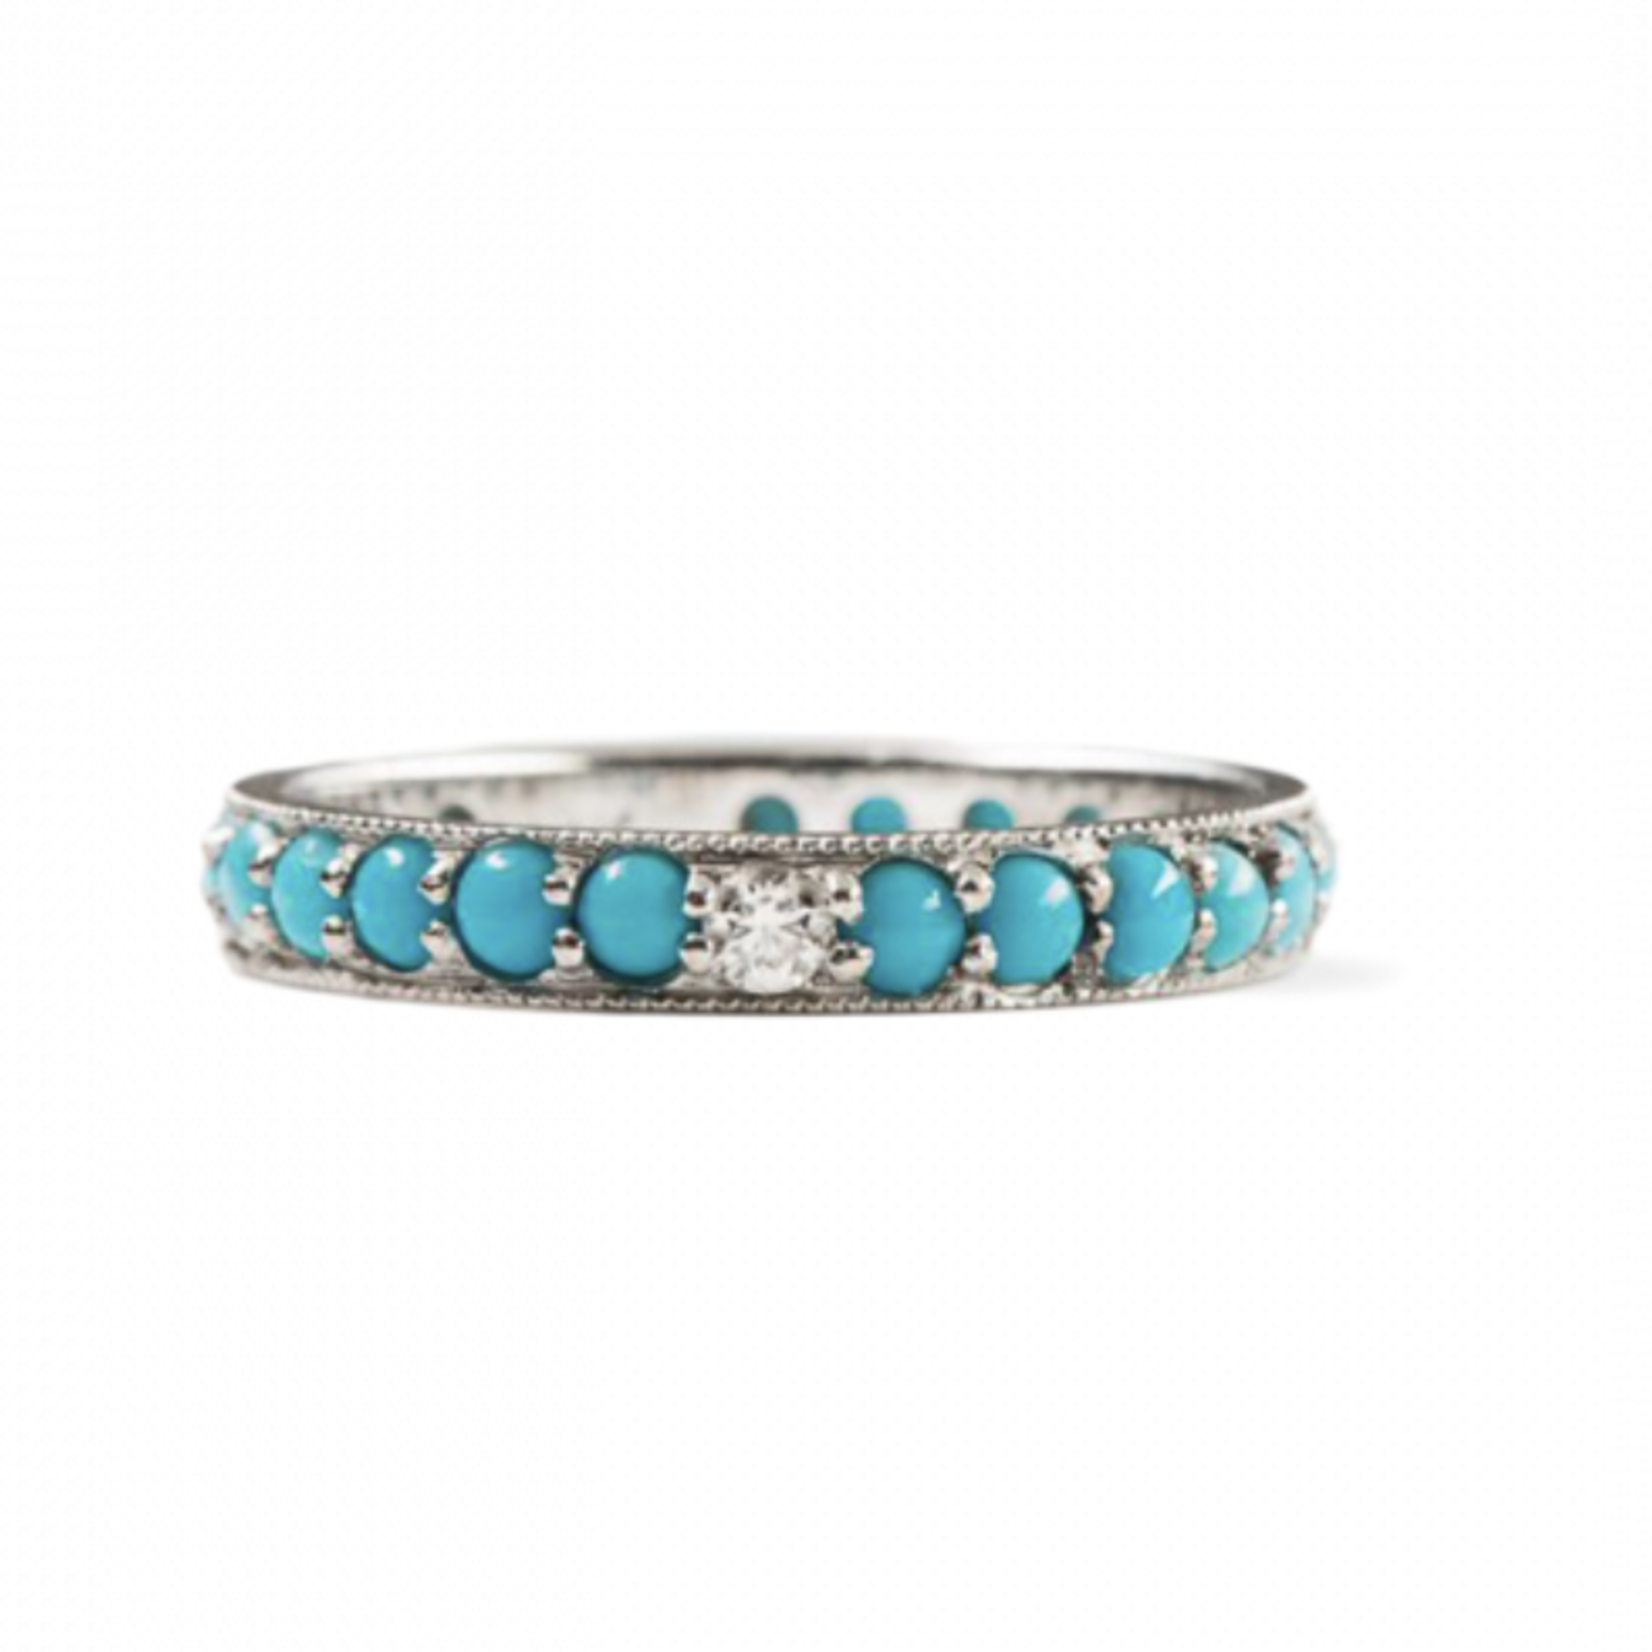 ILA Dunbar 14KW Diamond & Turquoise Ring- Size 6 1/2